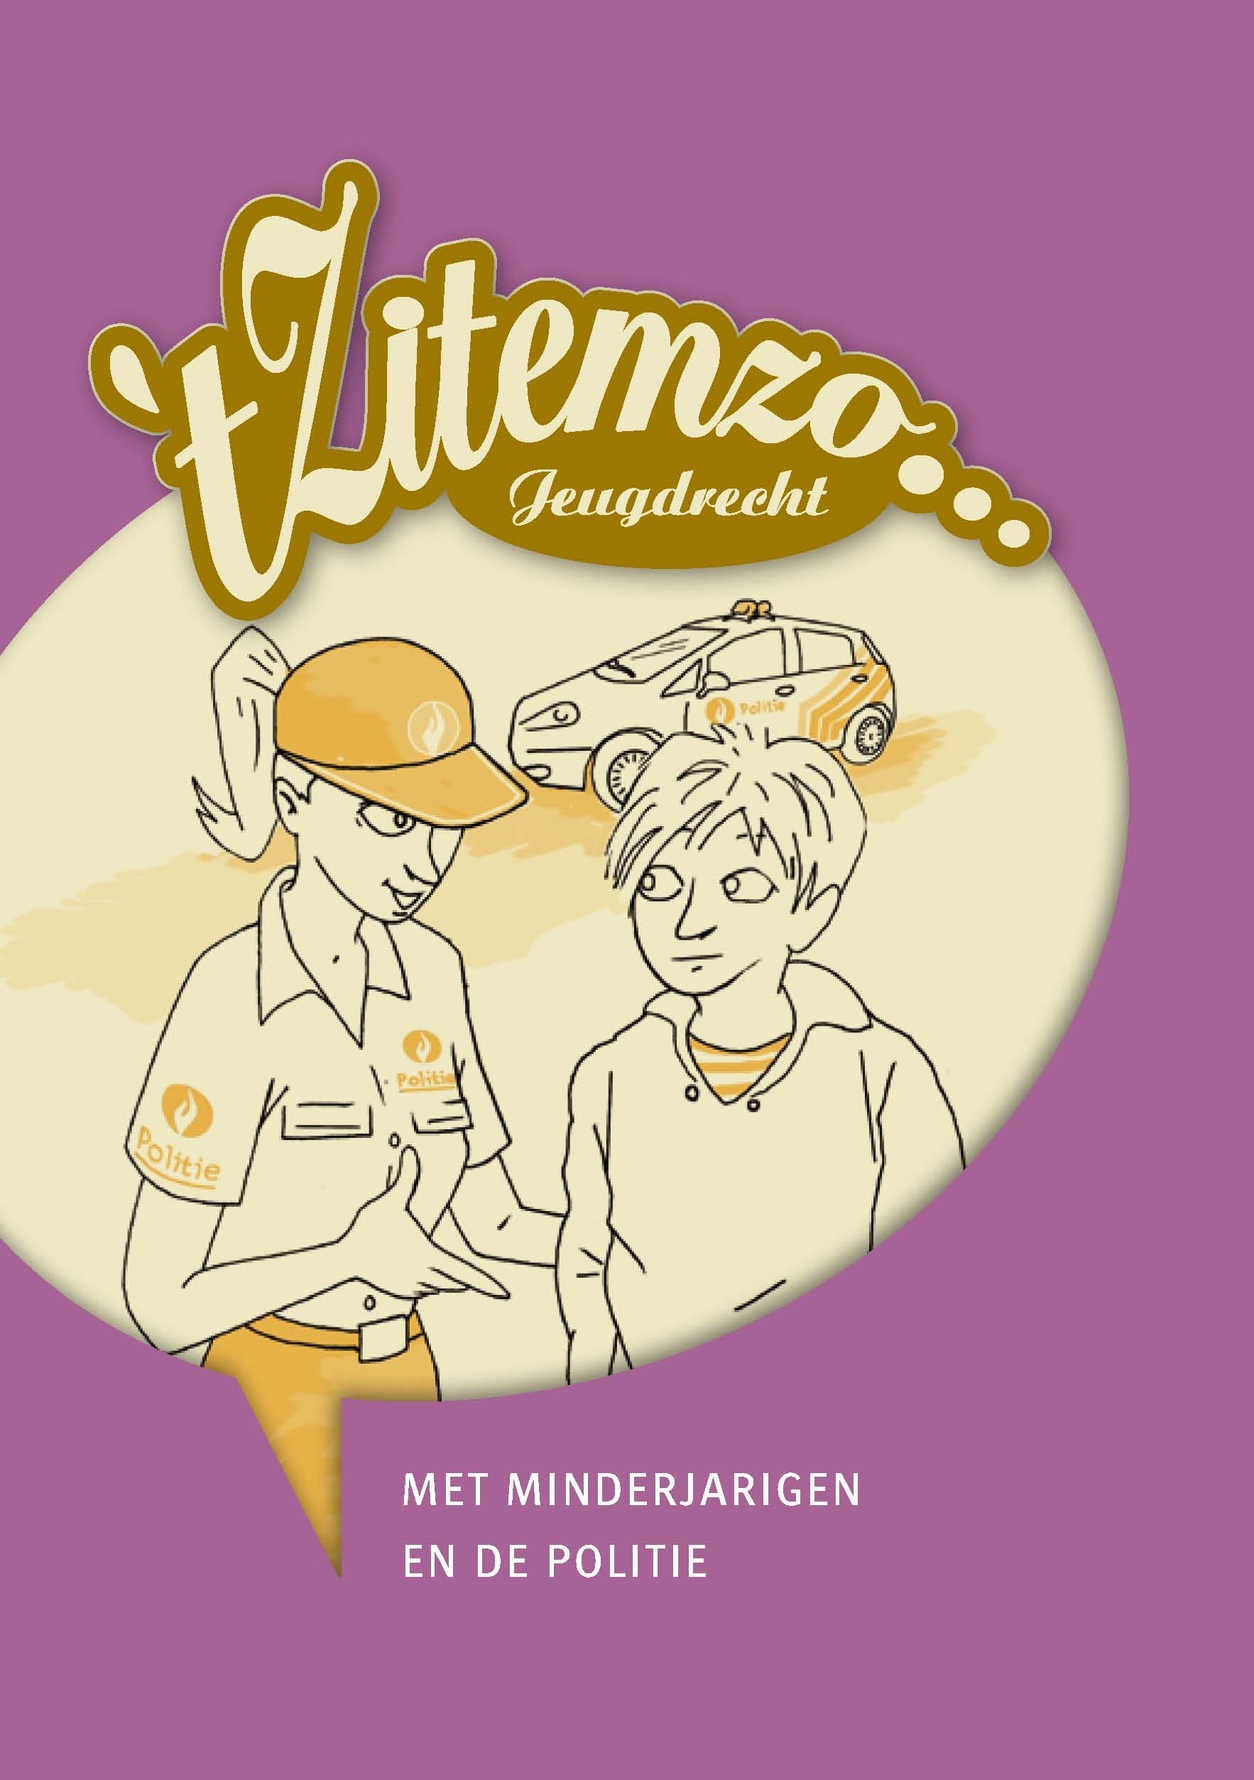 Brochure tZitemzo Jeugdrecht ... met minderjarigen en de politie